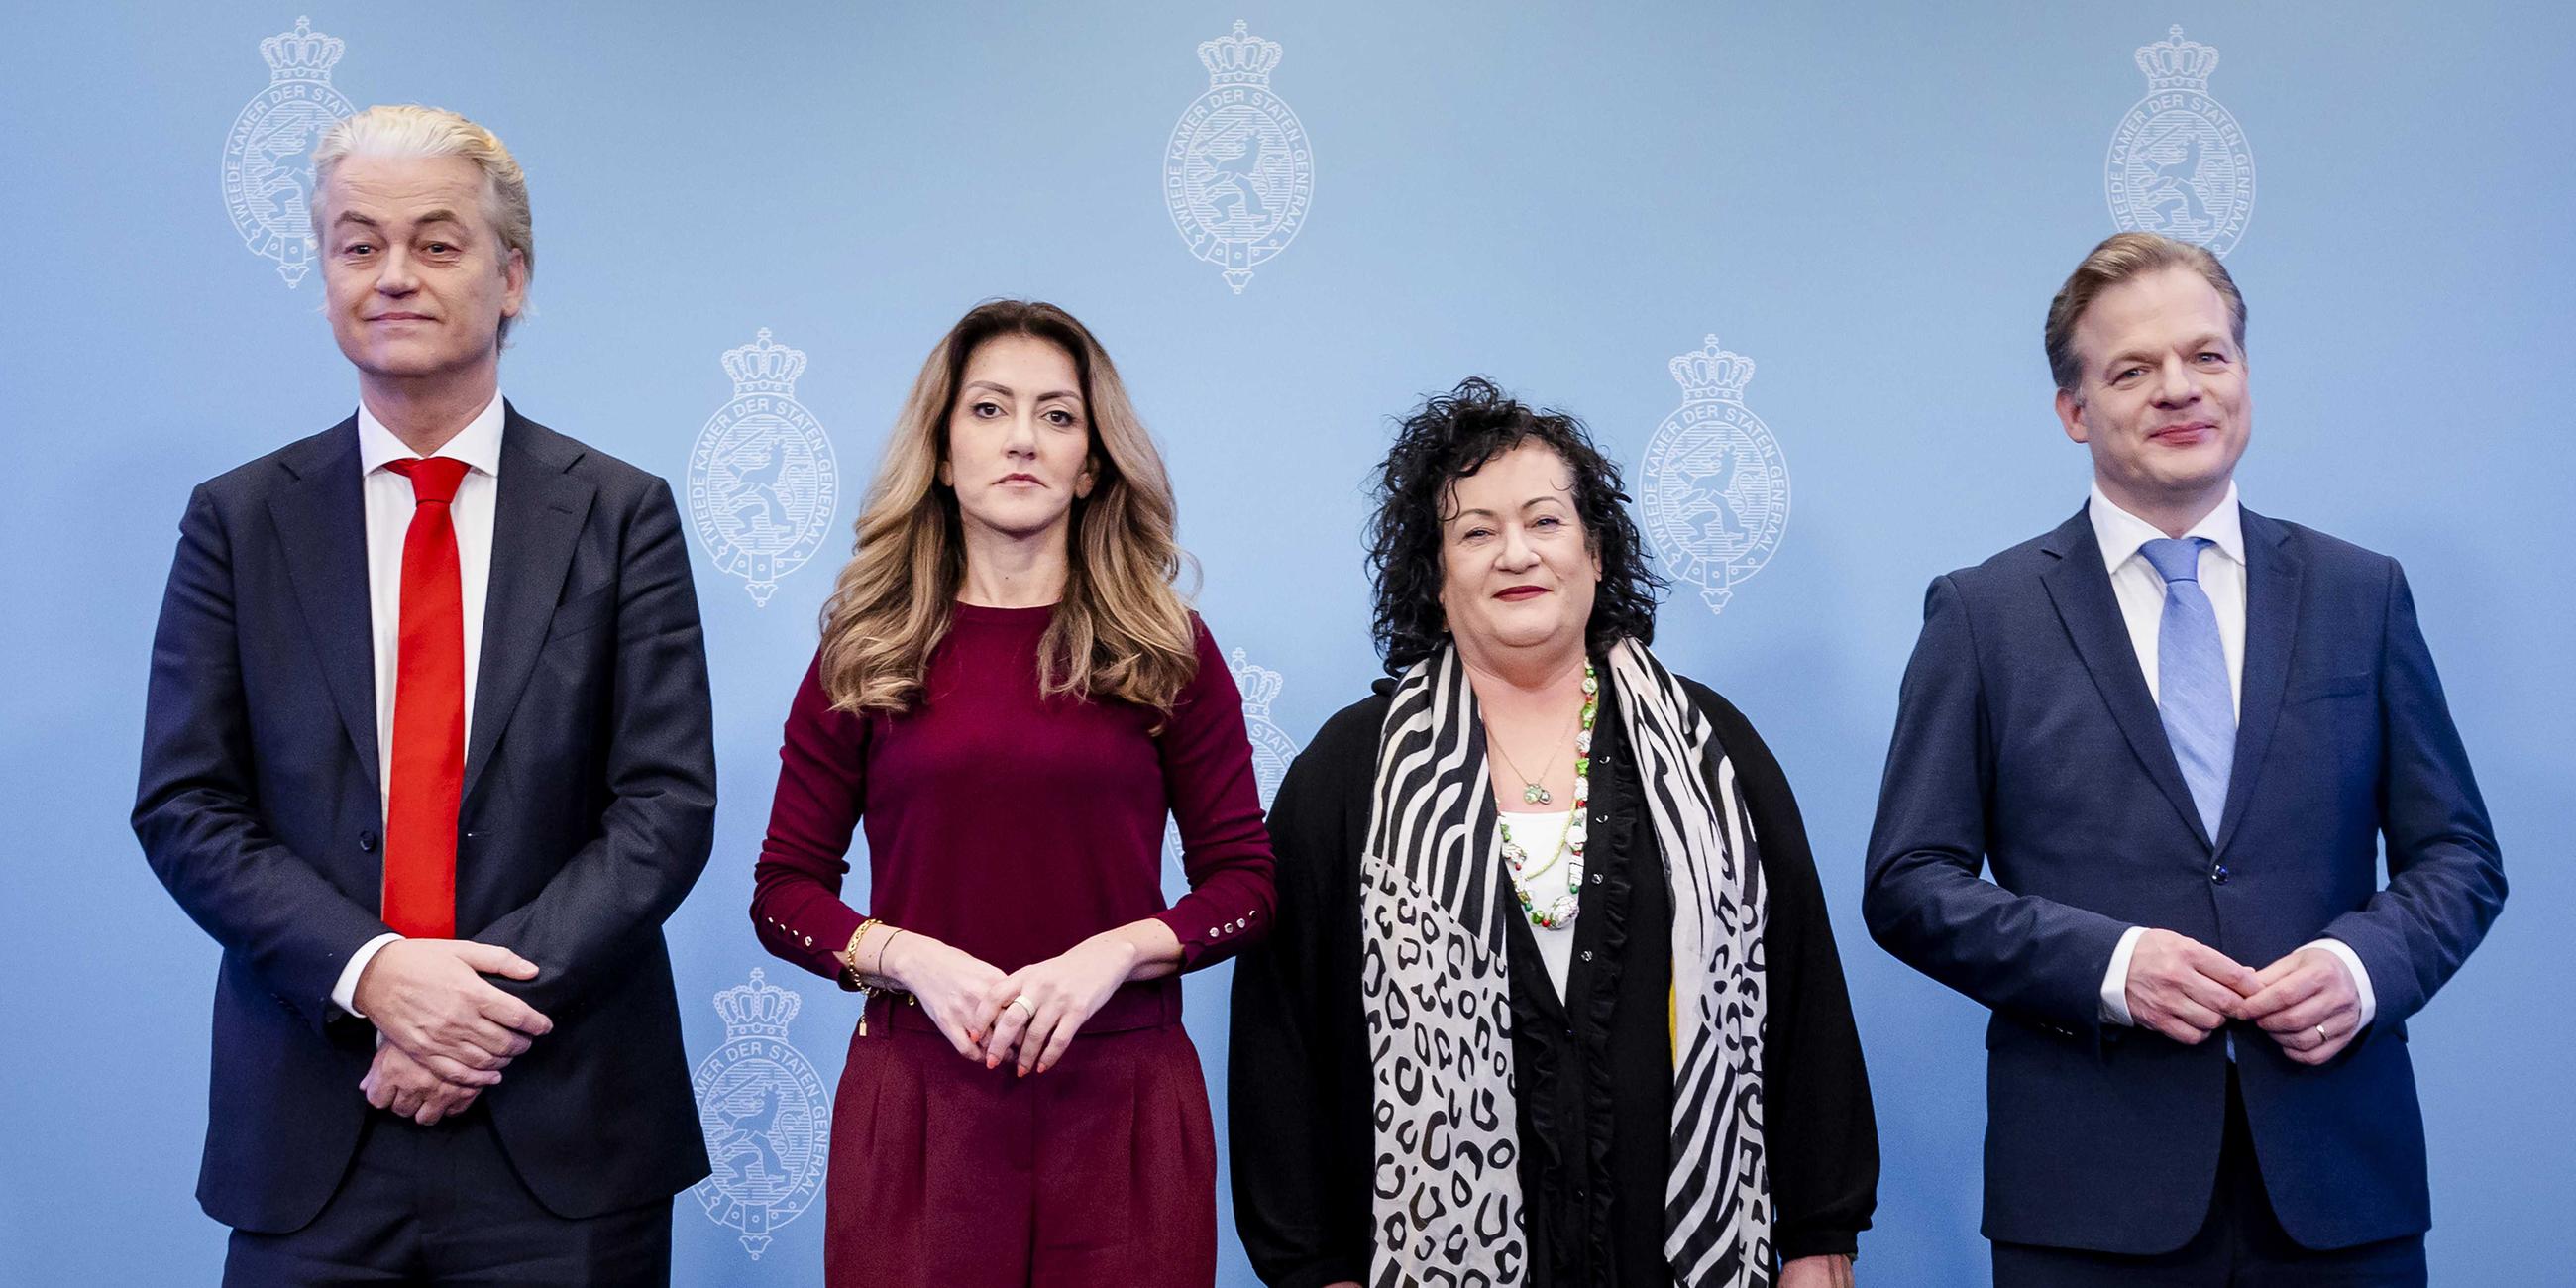 Gert Wilders und seine Koaltion bei der Pressekonferenz mit Dilan Yesilgoz, Caroline van der Plas, Pieter Omtzigt